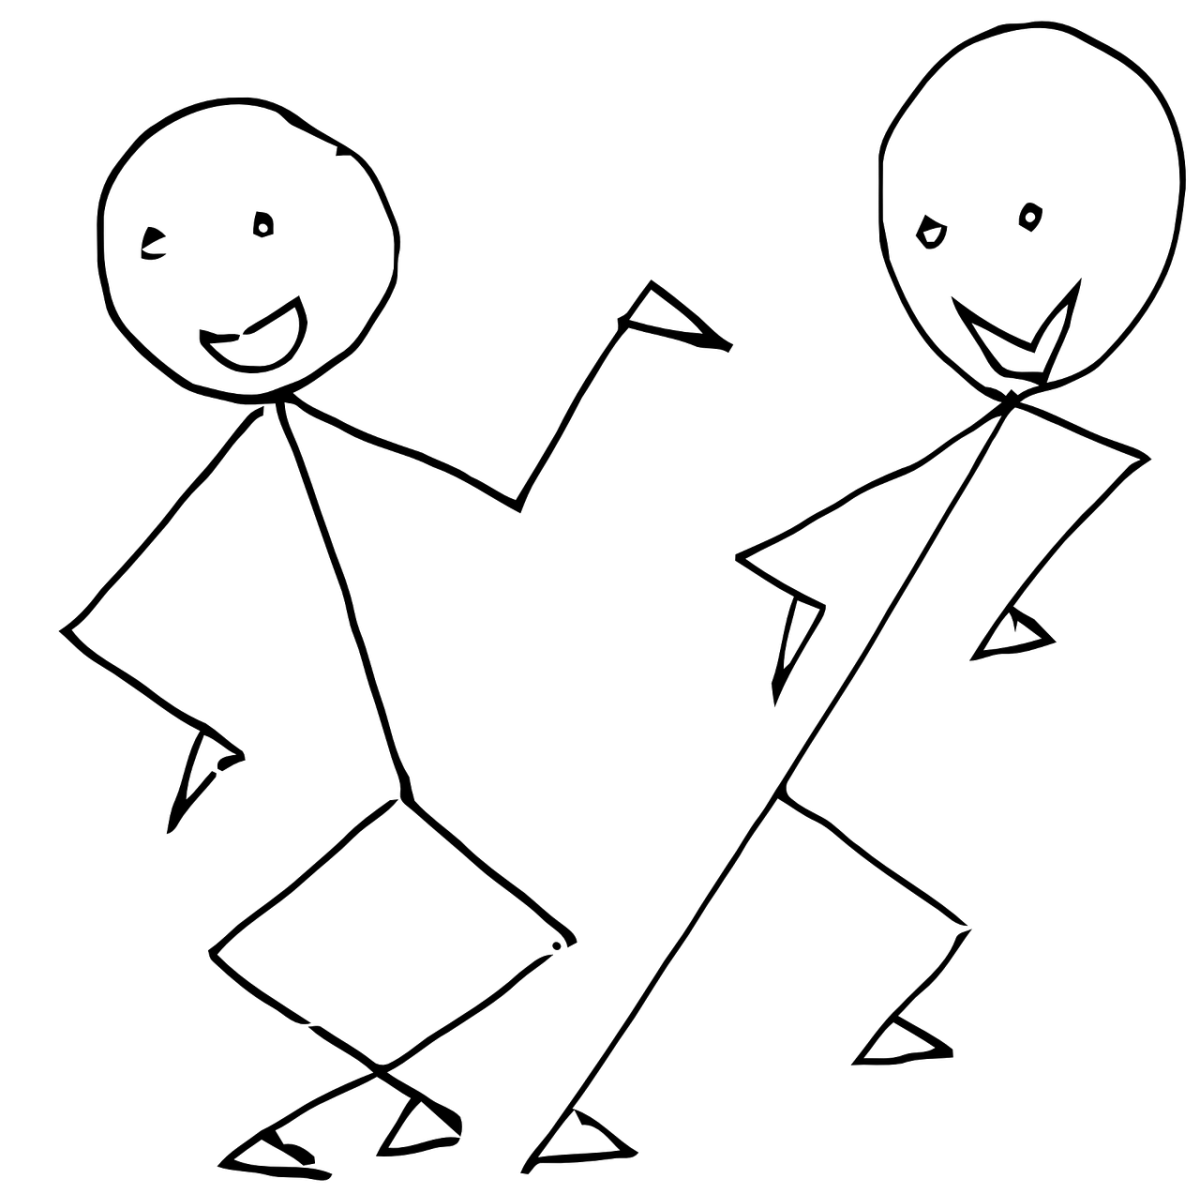 Нарисованный человечек. Танцующие человечки. Забавные человечки картинки. Схематичные человечки.